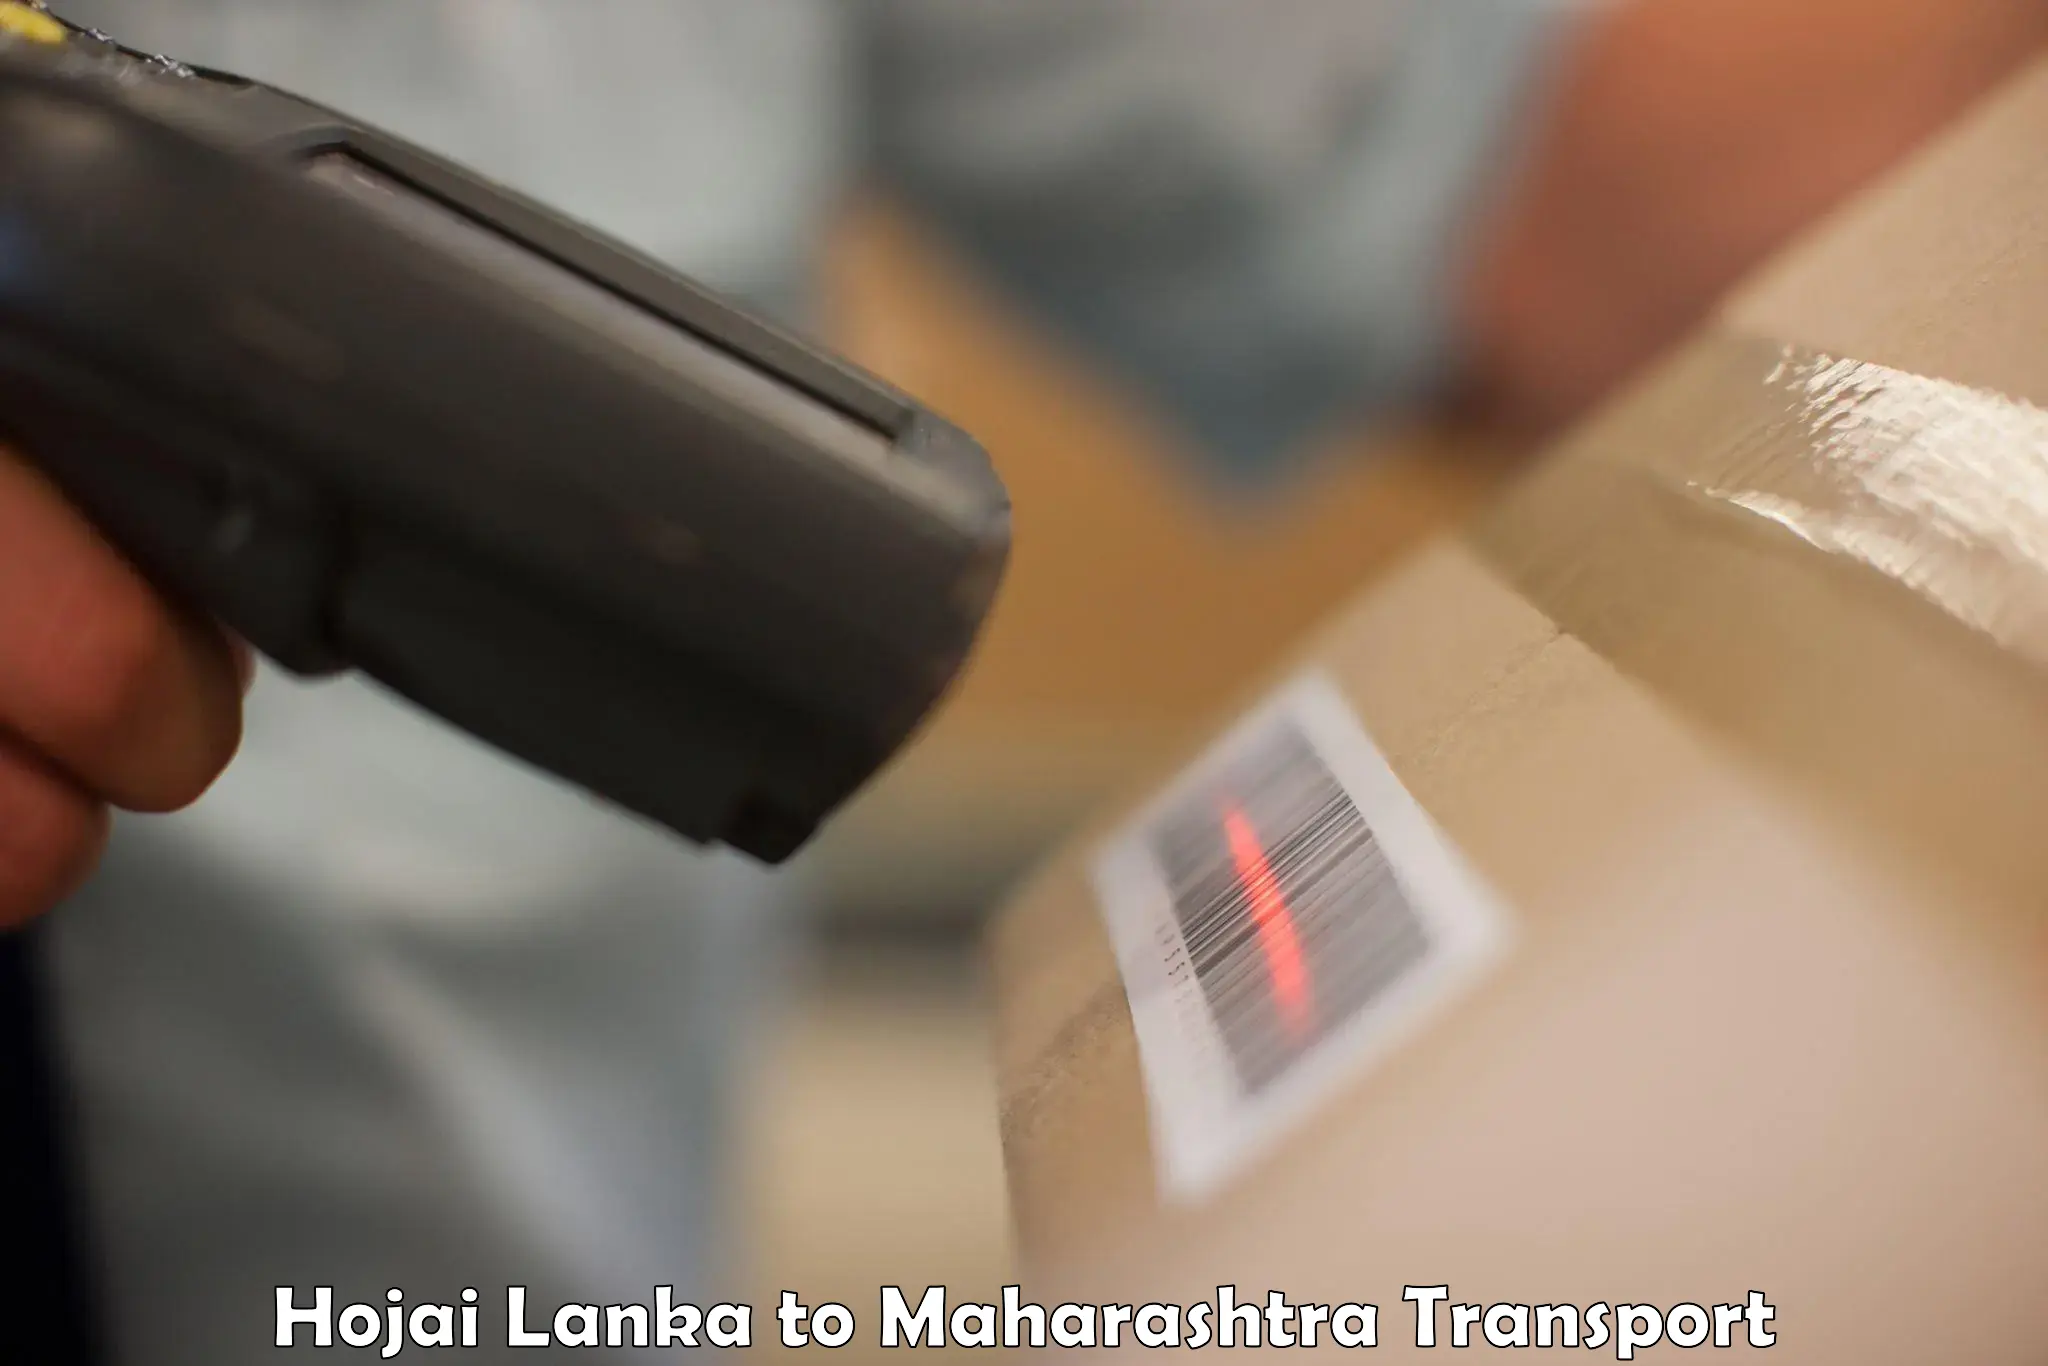 Online transport booking Hojai Lanka to Manjlegaon